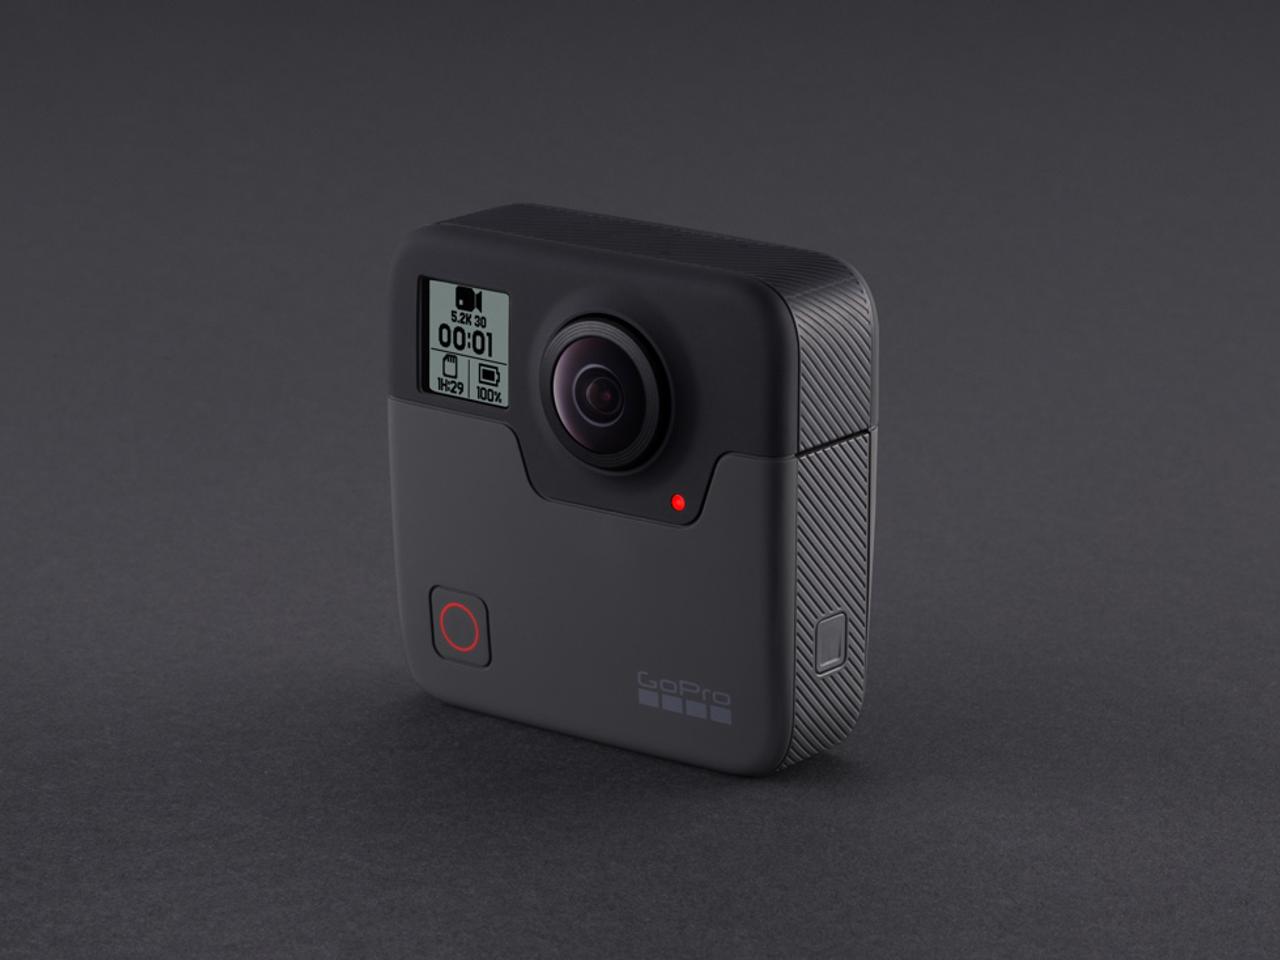 GoProの360°カメラ｢Fusion｣なら芸人の驚き顔も、視点の先も1台で撮れそう